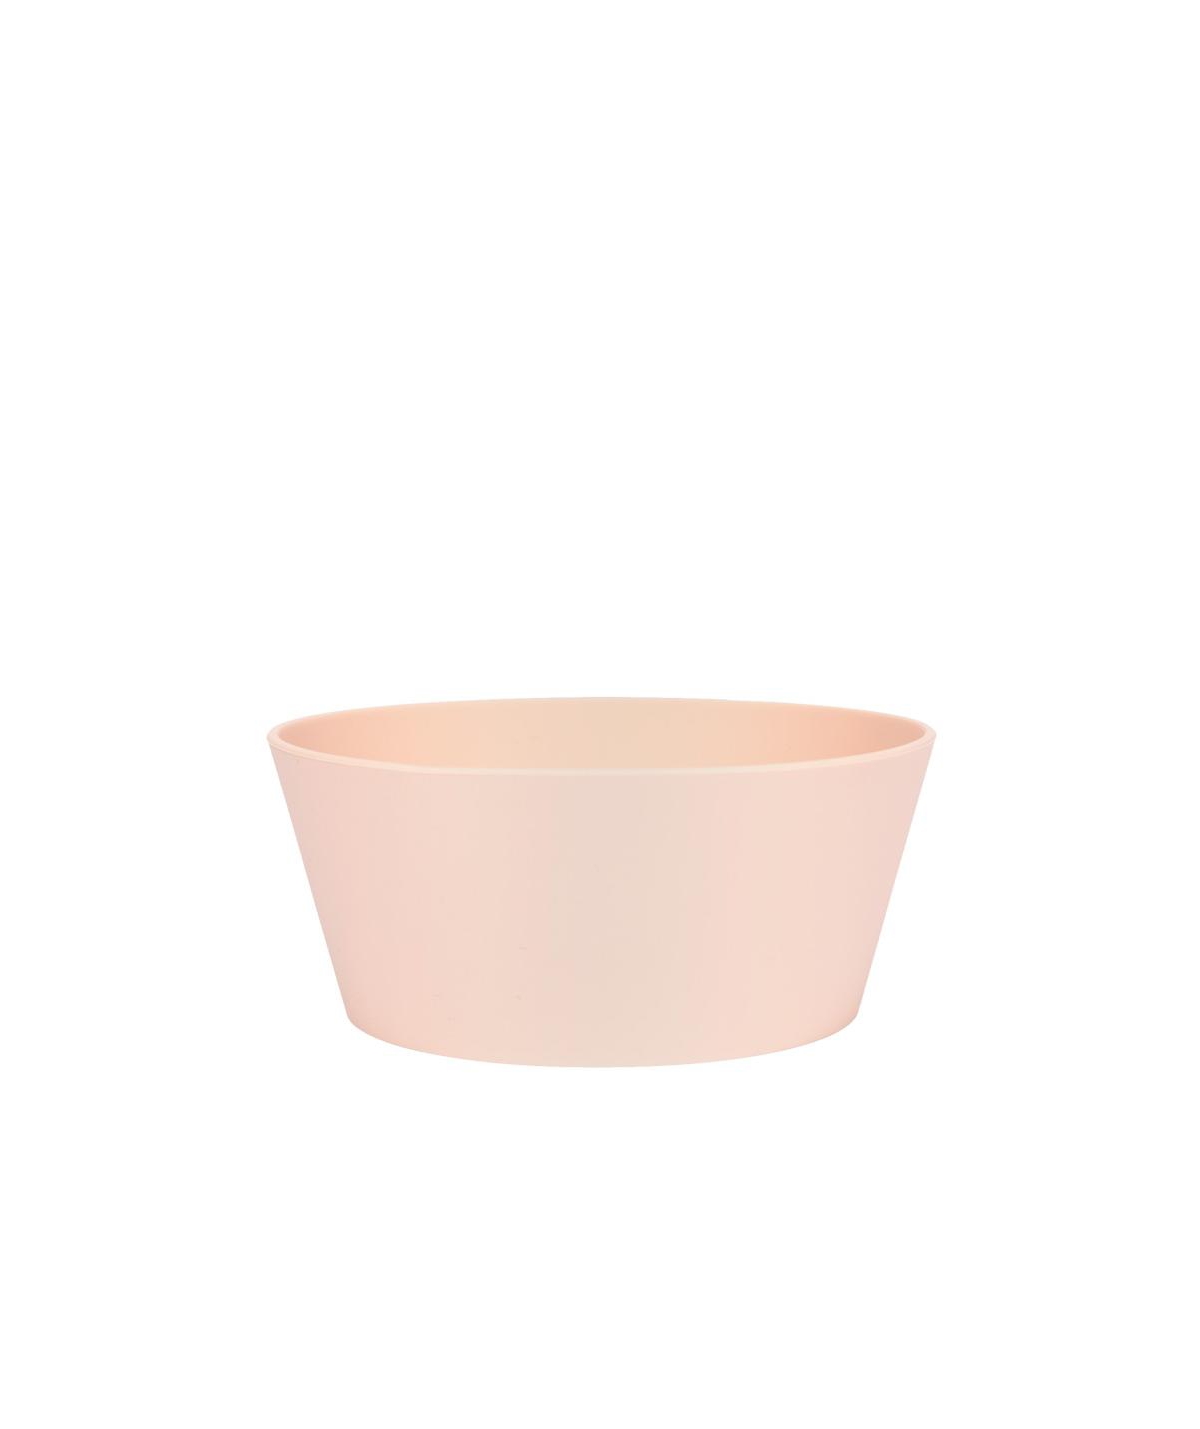 Habit Silicon Dog Bowl - Rose - Medium - Light/pastel Pink